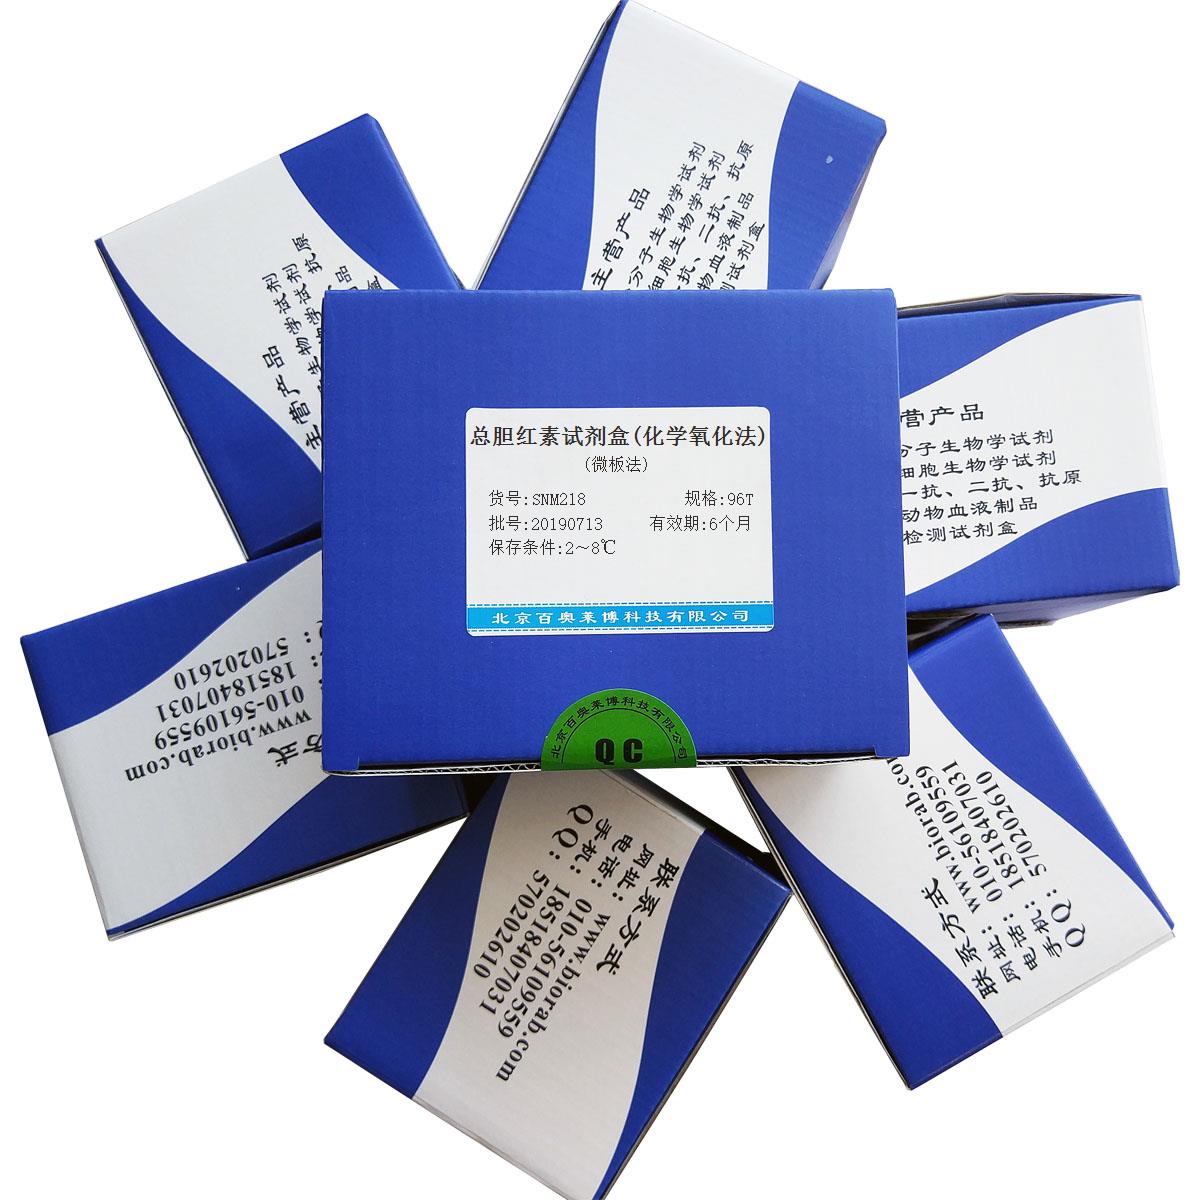 总胆红素试剂盒(化学氧化法)(微板法)北京供应商